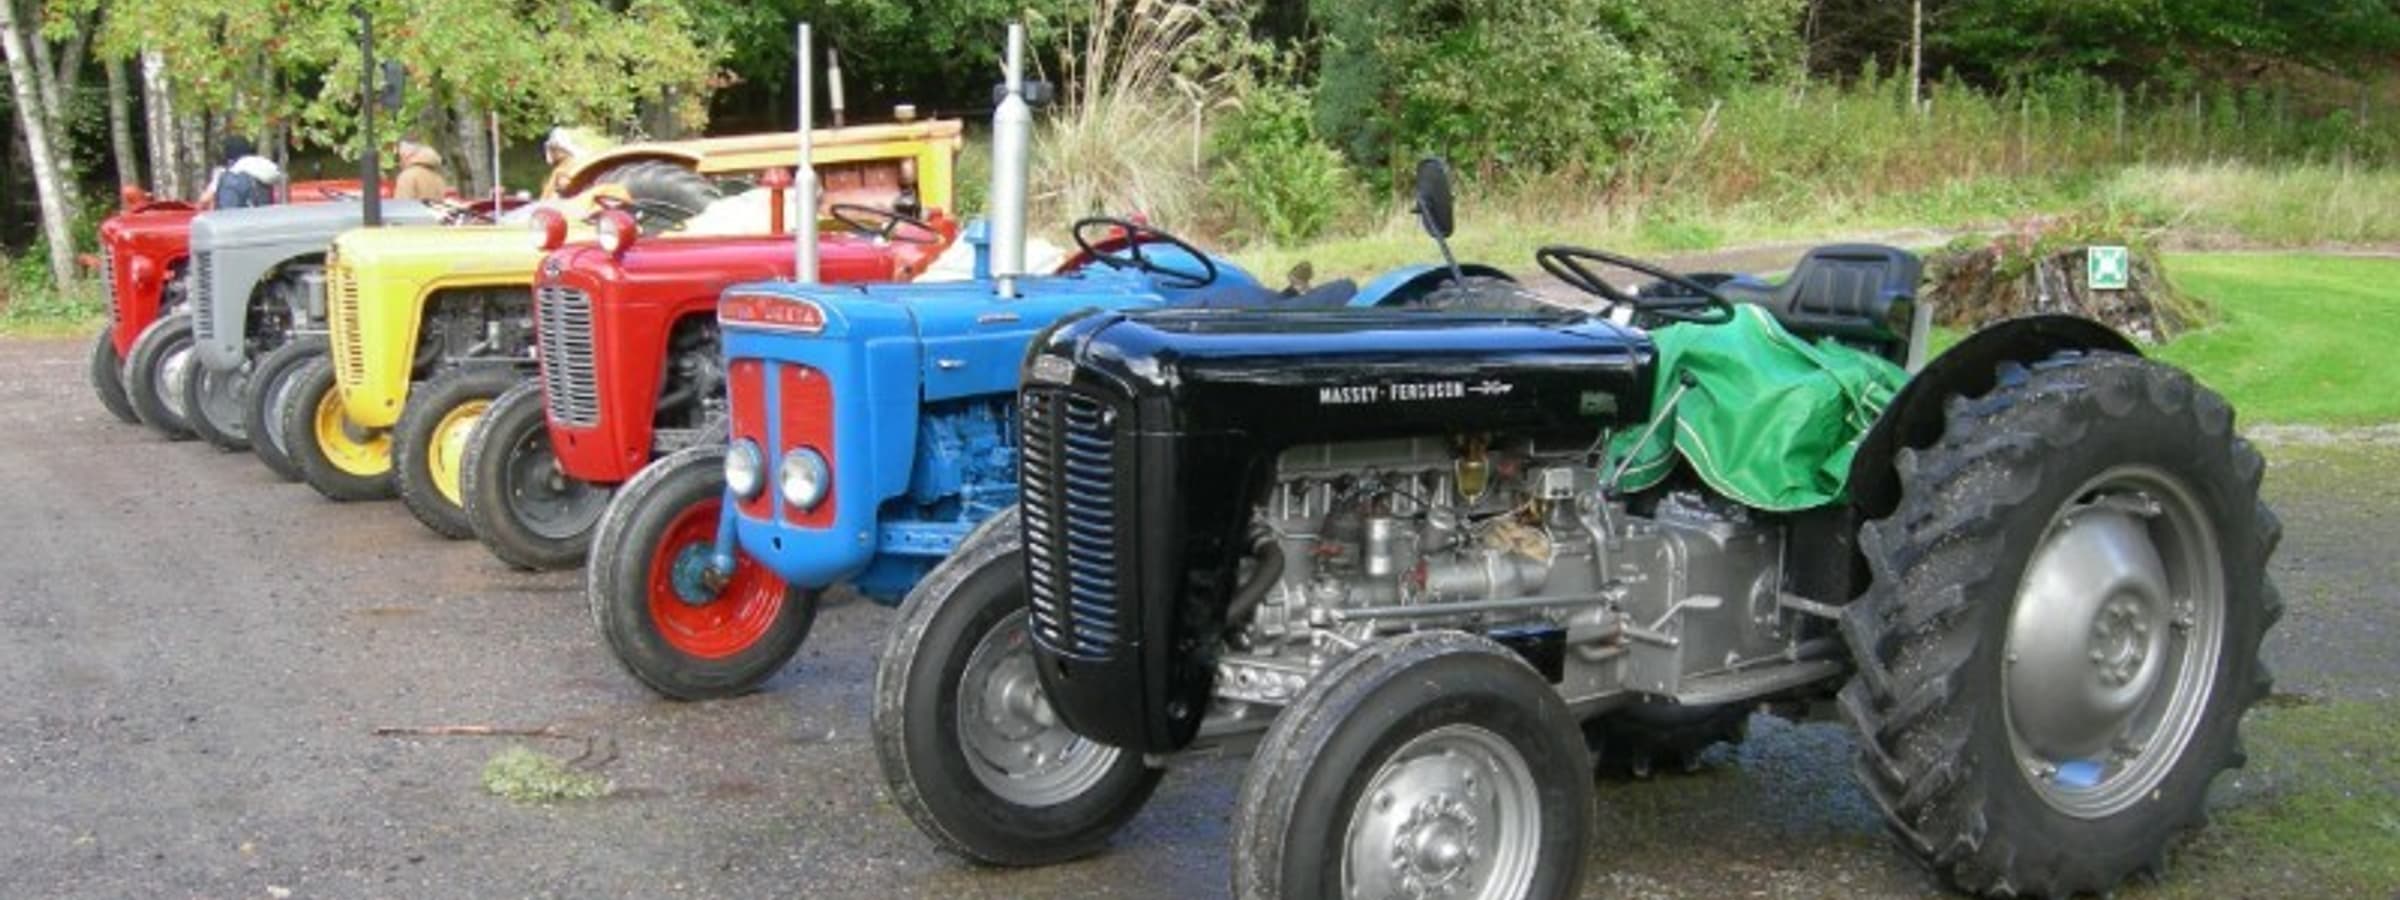 A row of tractors.